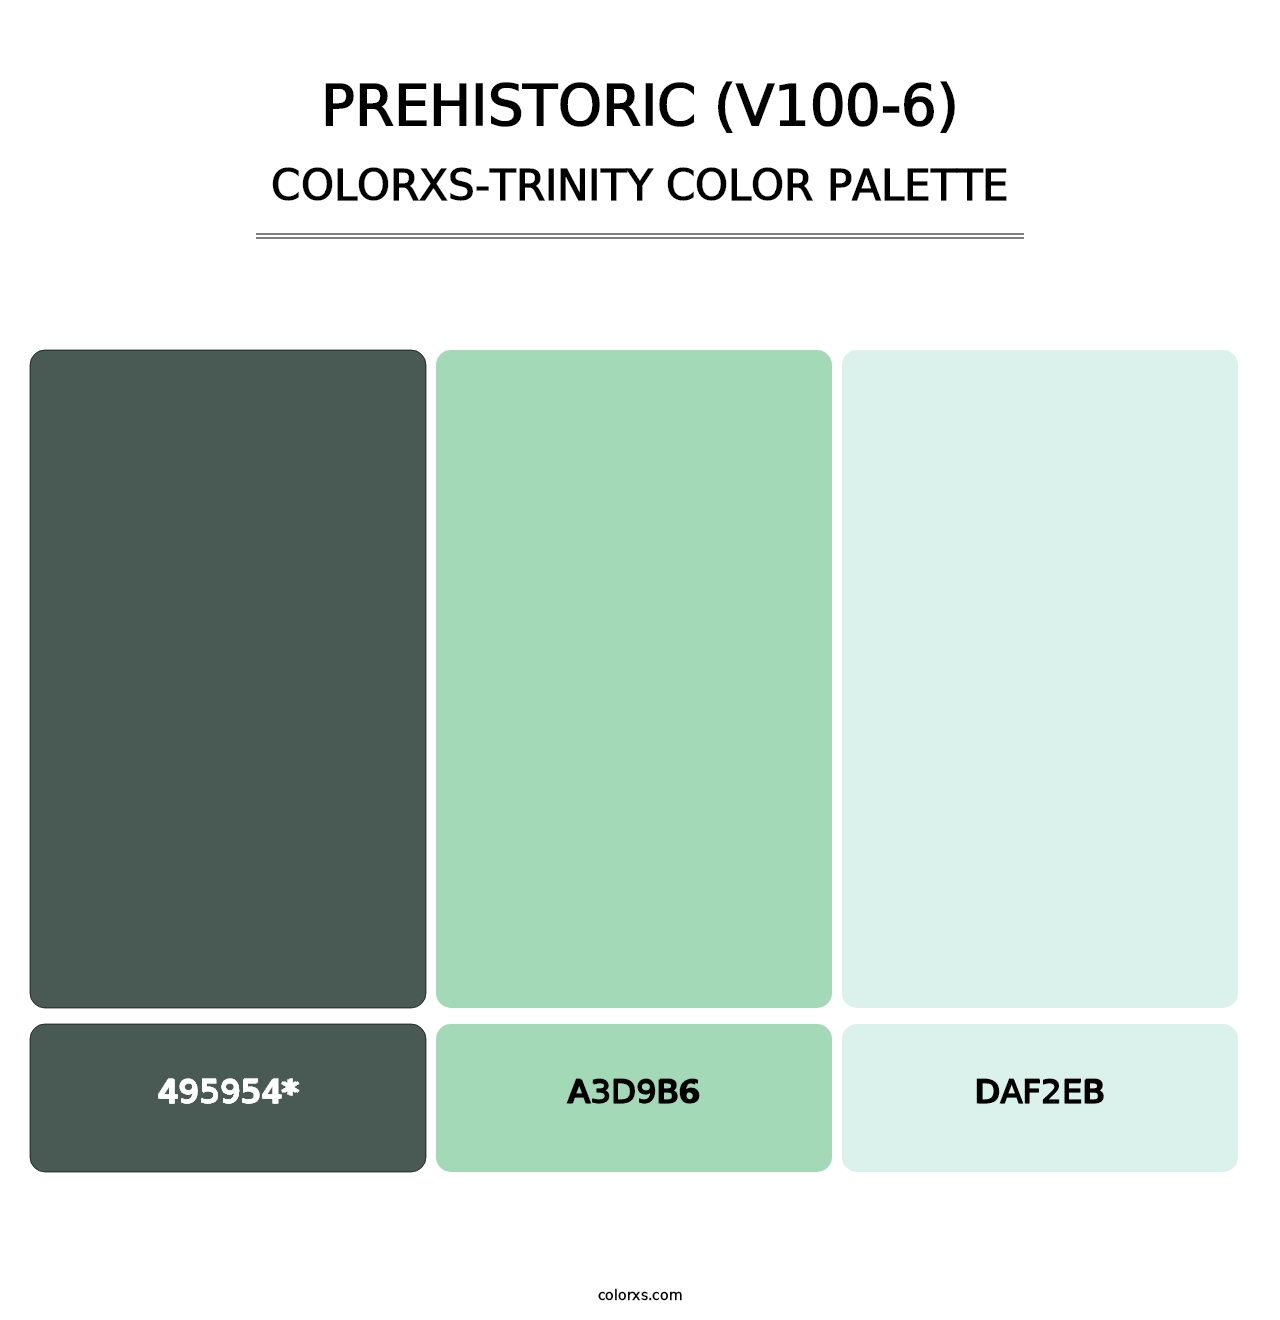 Prehistoric (V100-6) - Colorxs Trinity Palette